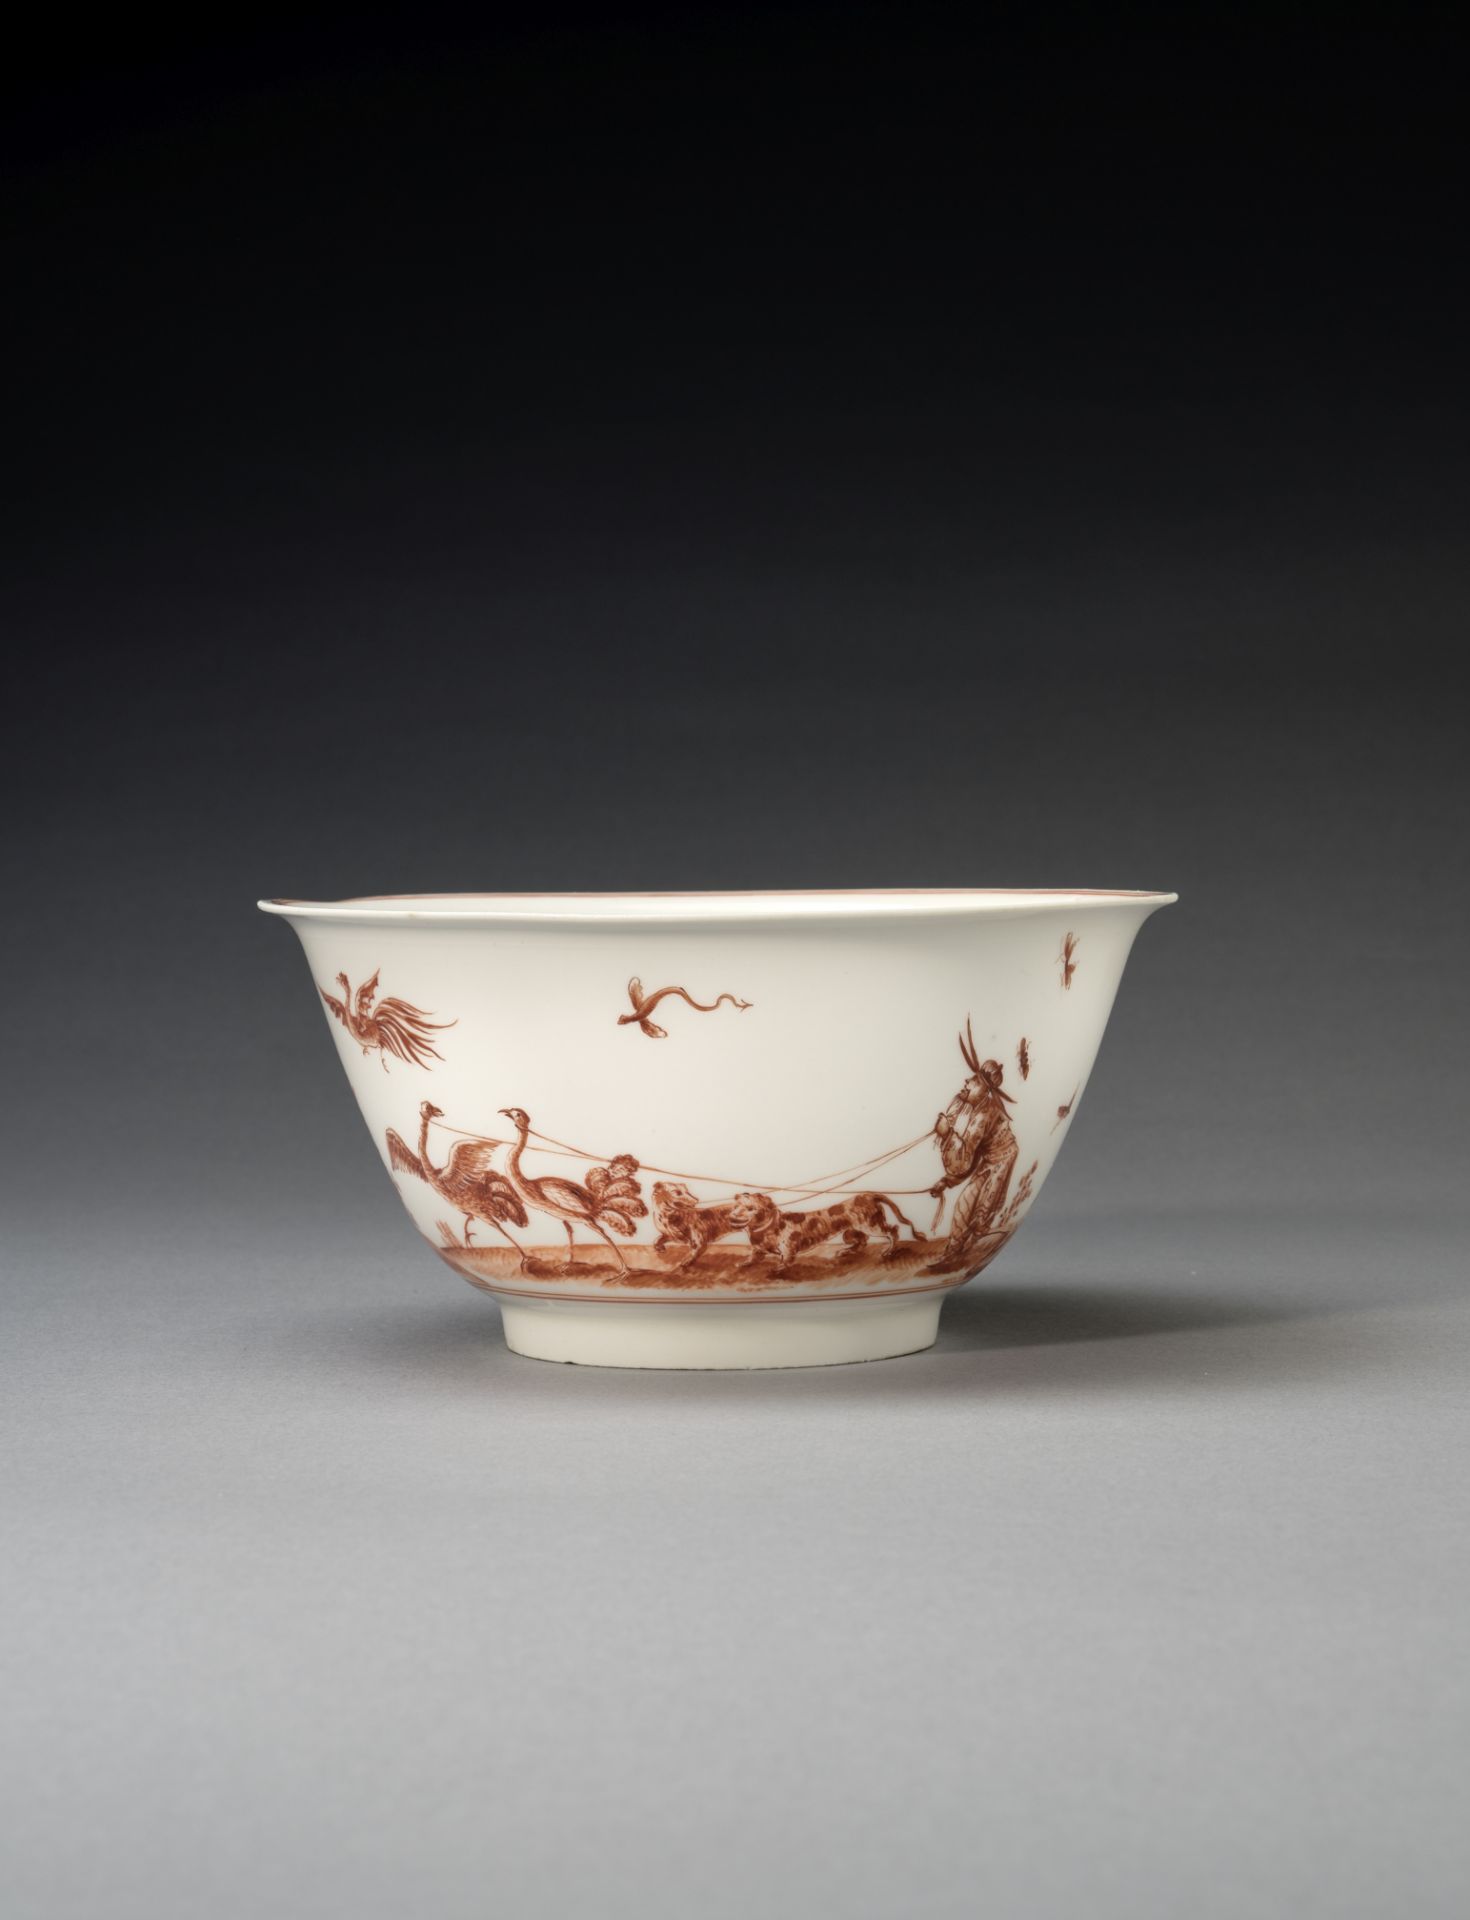 A very rare Meissen waste bowl, circa 1723